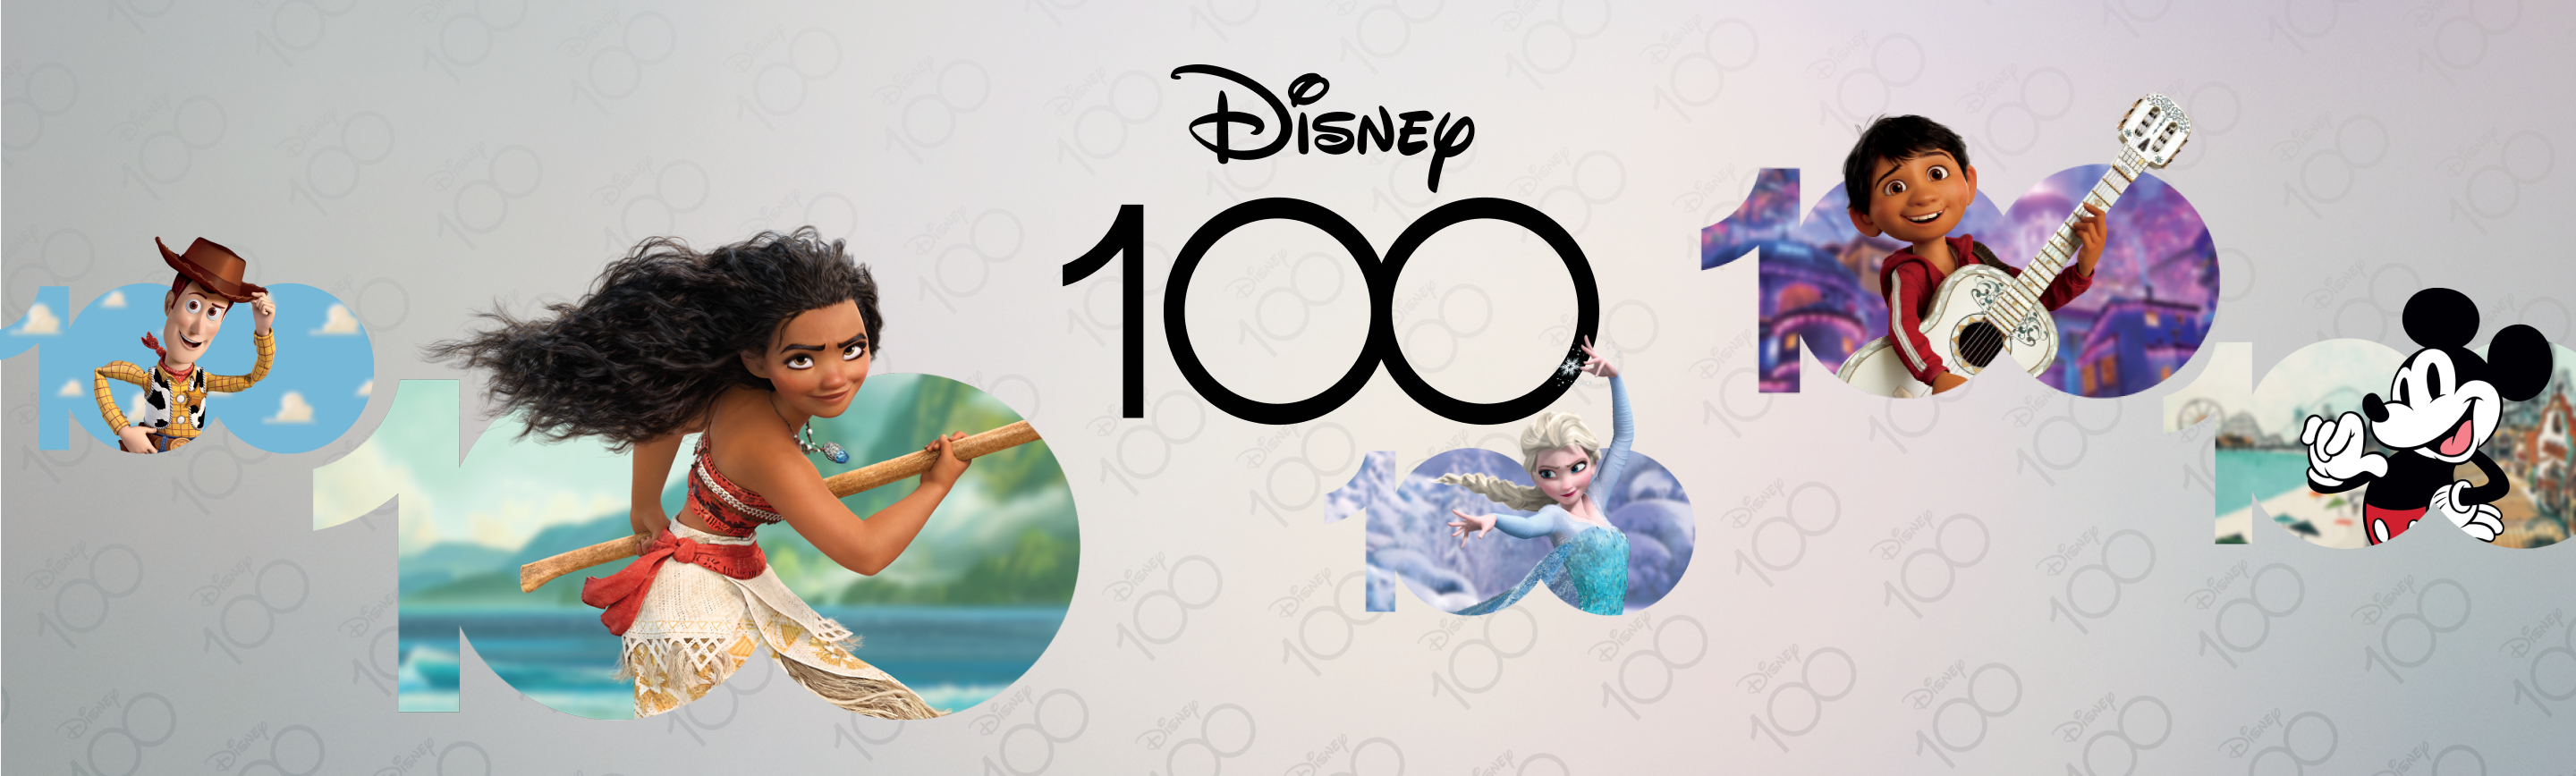 100% quiz disney - Disney